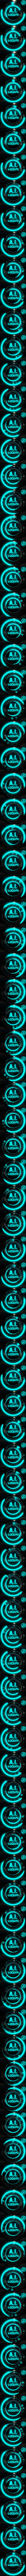 A.I. LOOPS